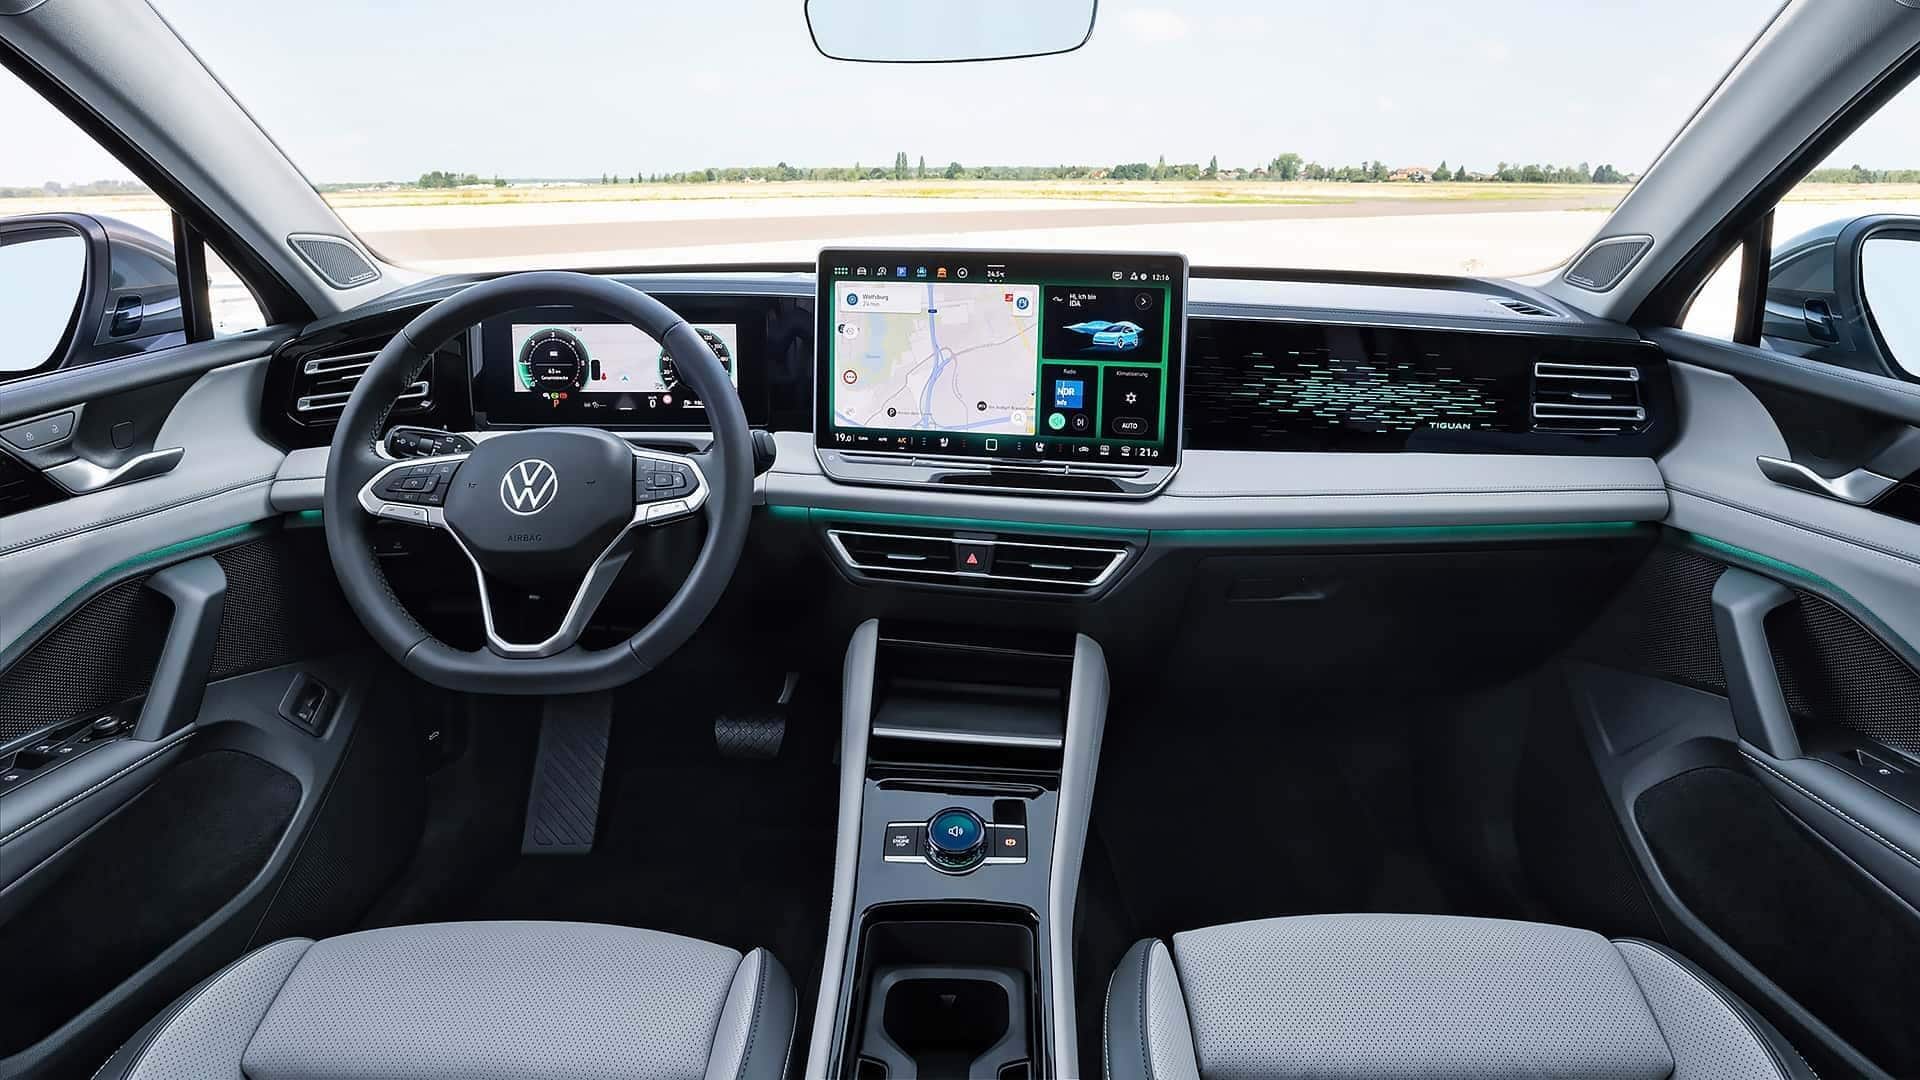 Volkswagen reveals triple-screen feature in new sedan for international markets